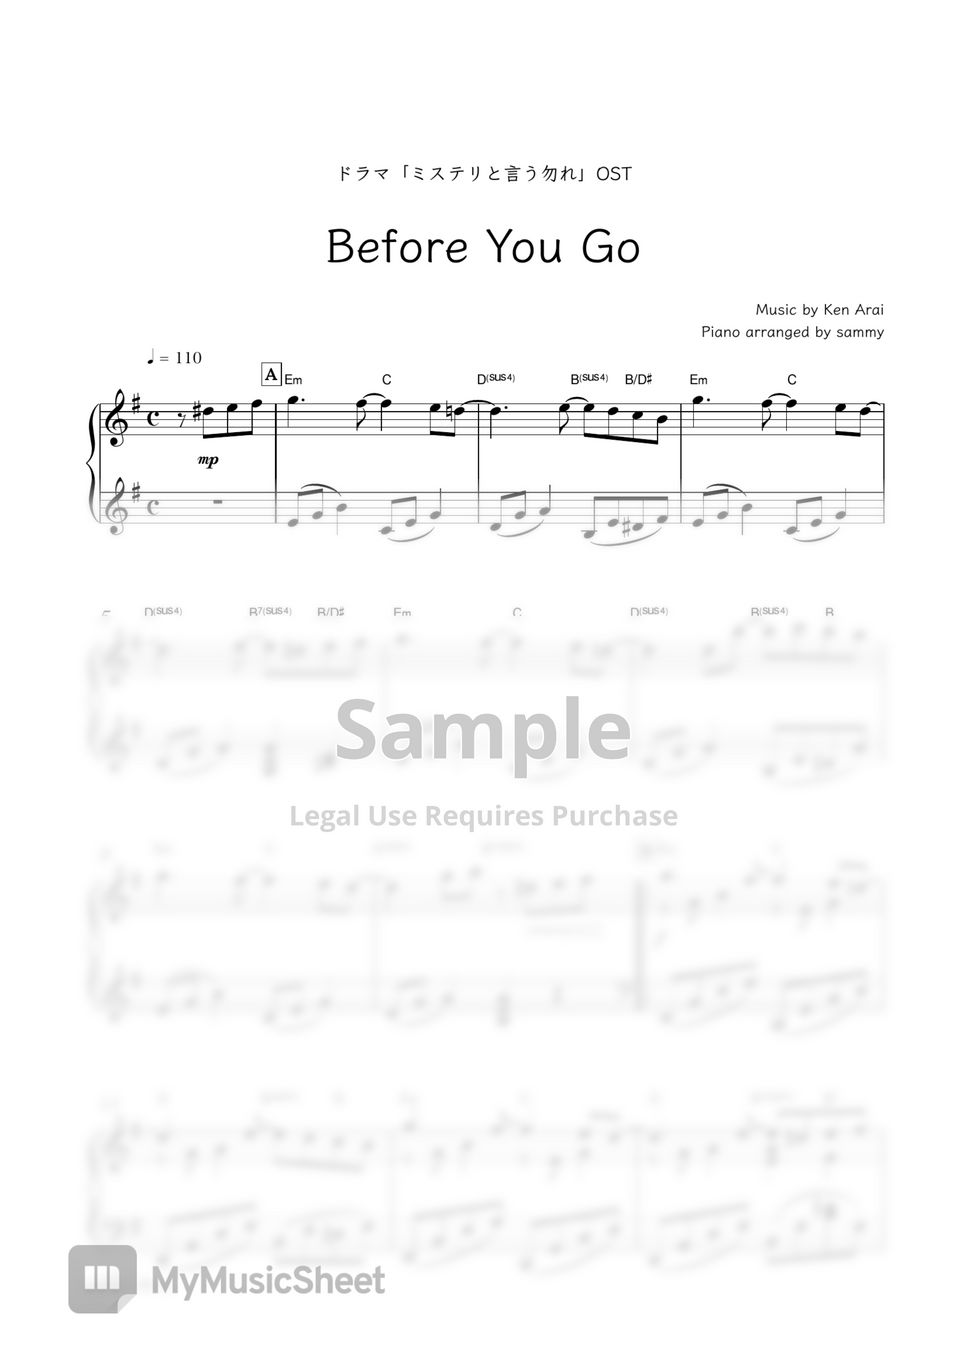 ドラマ『ミステリと言う勿れ』OST - Before You Go by sammy